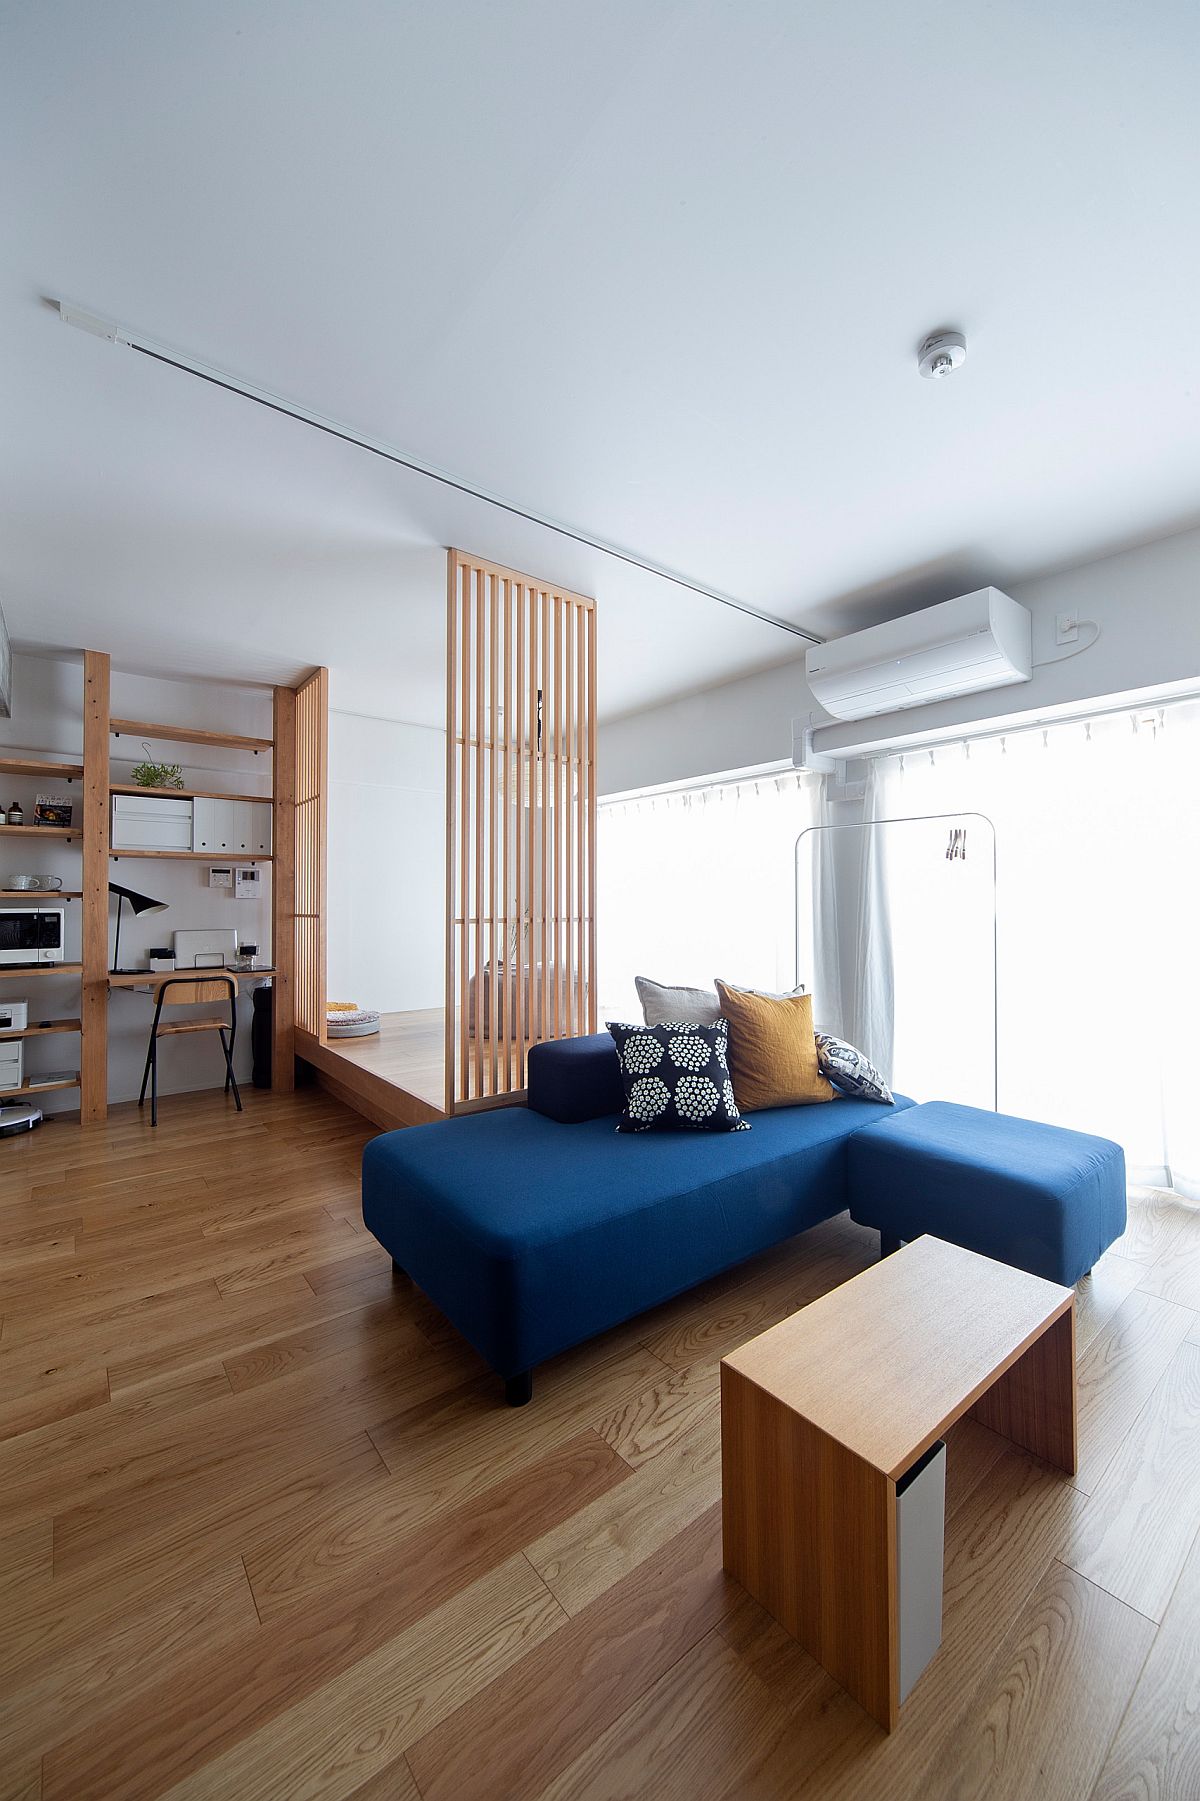 Đối với những ai yêu thích phong cách Minimalism thì phòng khách này sẽ khiến họ yêu mến từ cái nhìn đầu tiên. Chiếc sofa tối giản có thể tách thành hai phần linh hoạt cùng gam màu xanh dương đậm nổi bật trên nền sàn gỗ mộc mạc.